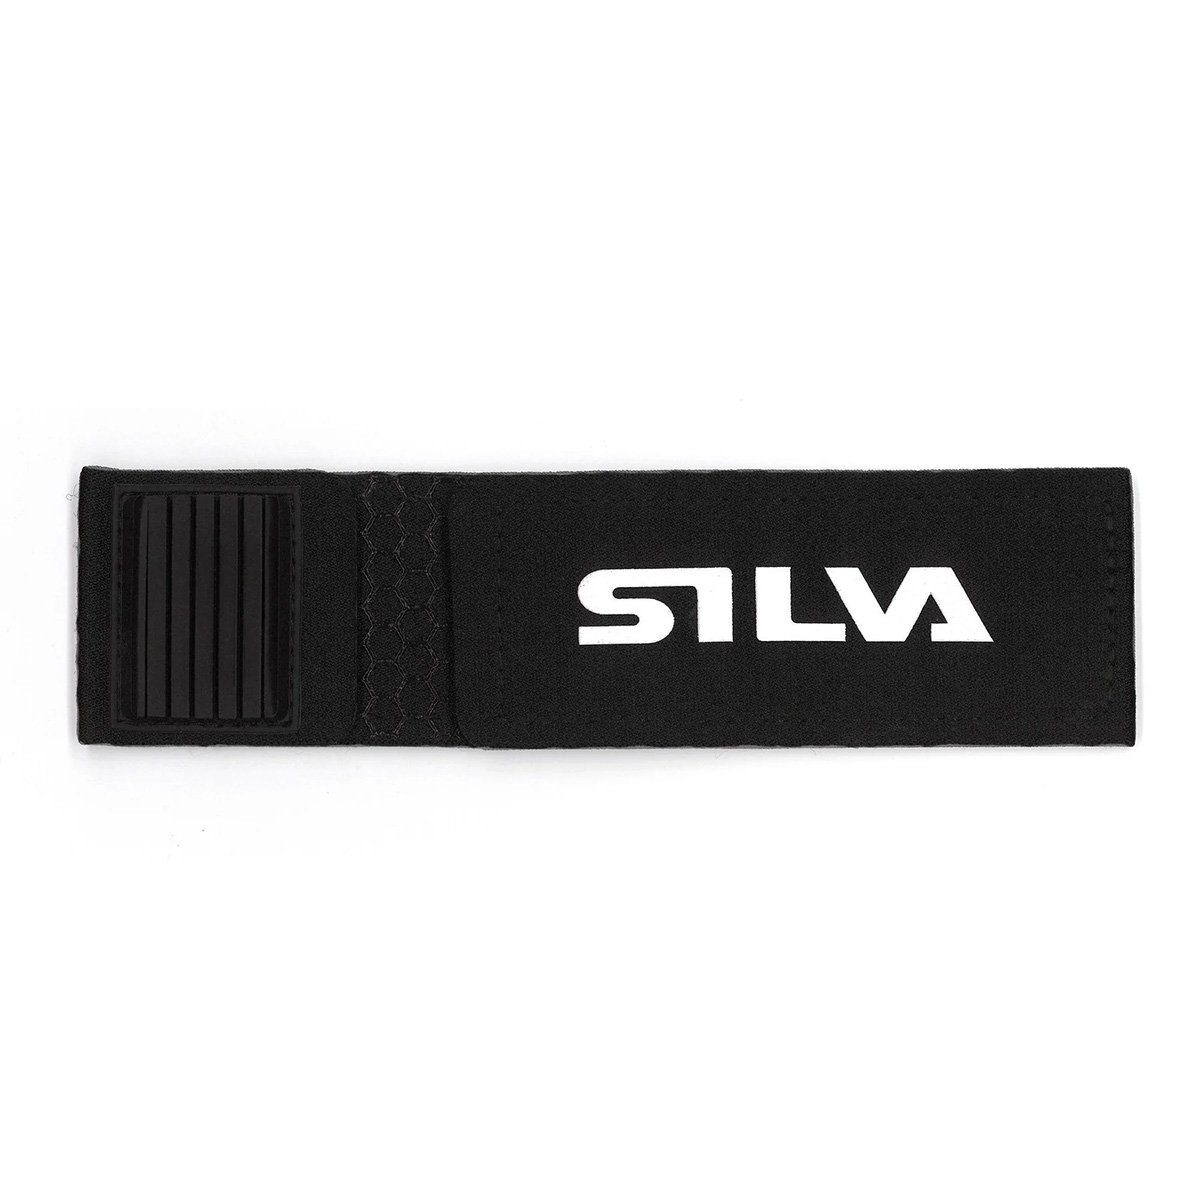 Velcro Silva LED Taschenlampe Strap Battery